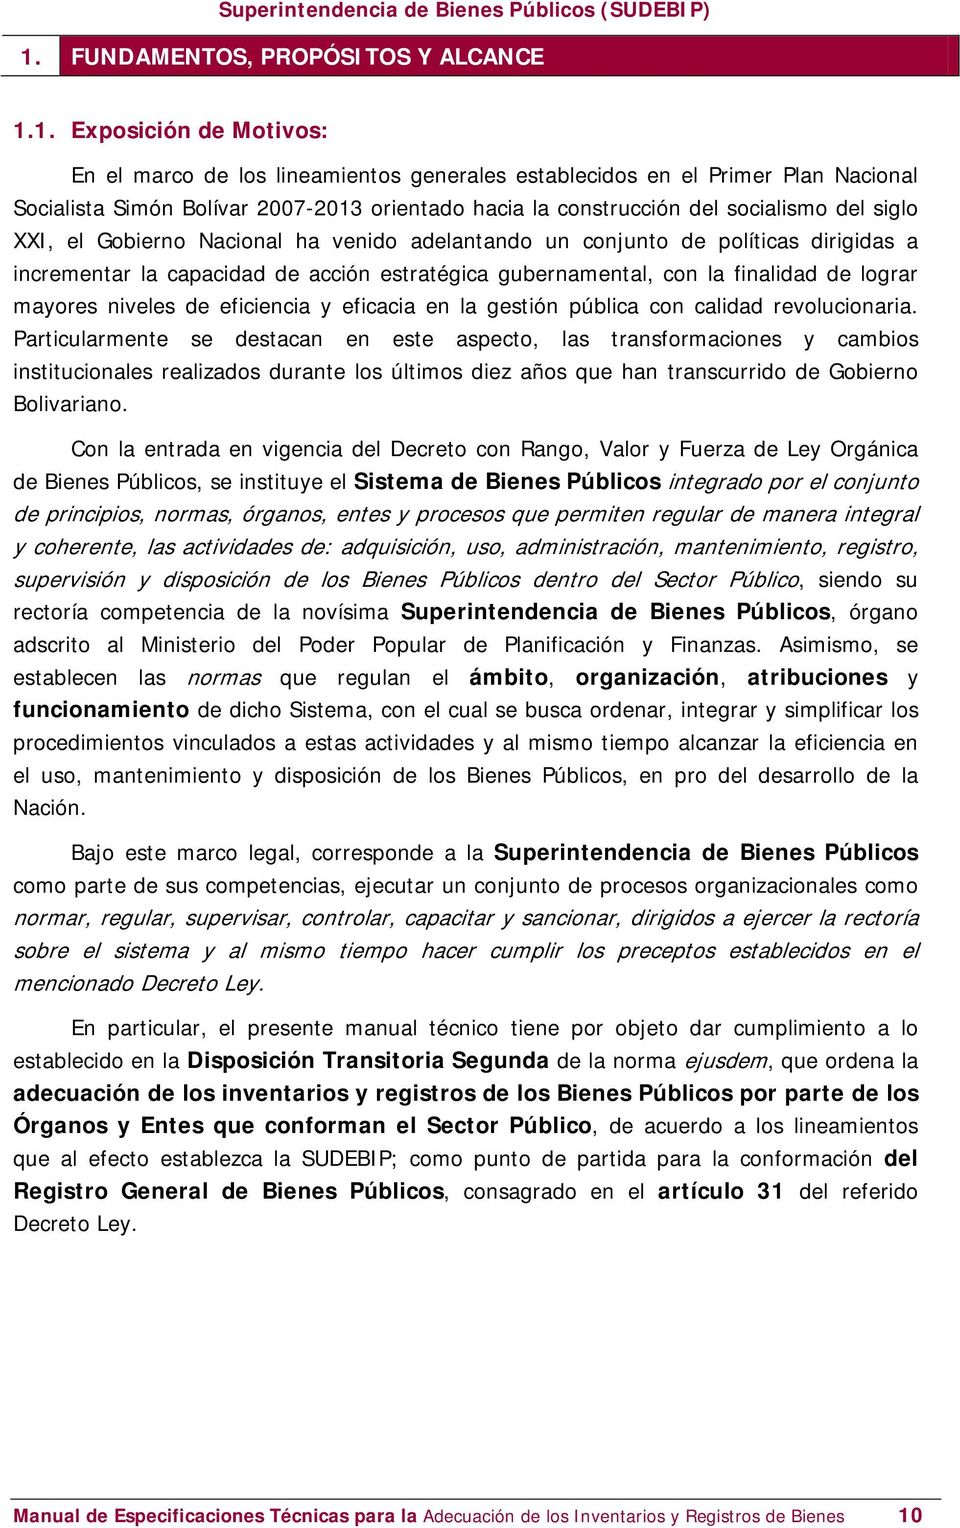 1. Exposición de Motivos: En el marco de los lineamientos generales establecidos en el Primer Plan Nacional Socialista Simón Bolívar 2007-2013 orientado hacia la construcción del socialismo del siglo